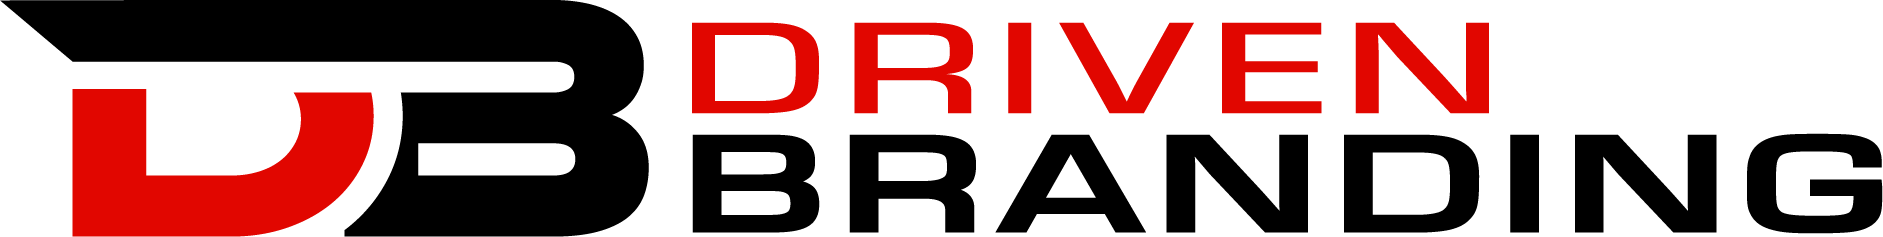 Driven Branding's Logo